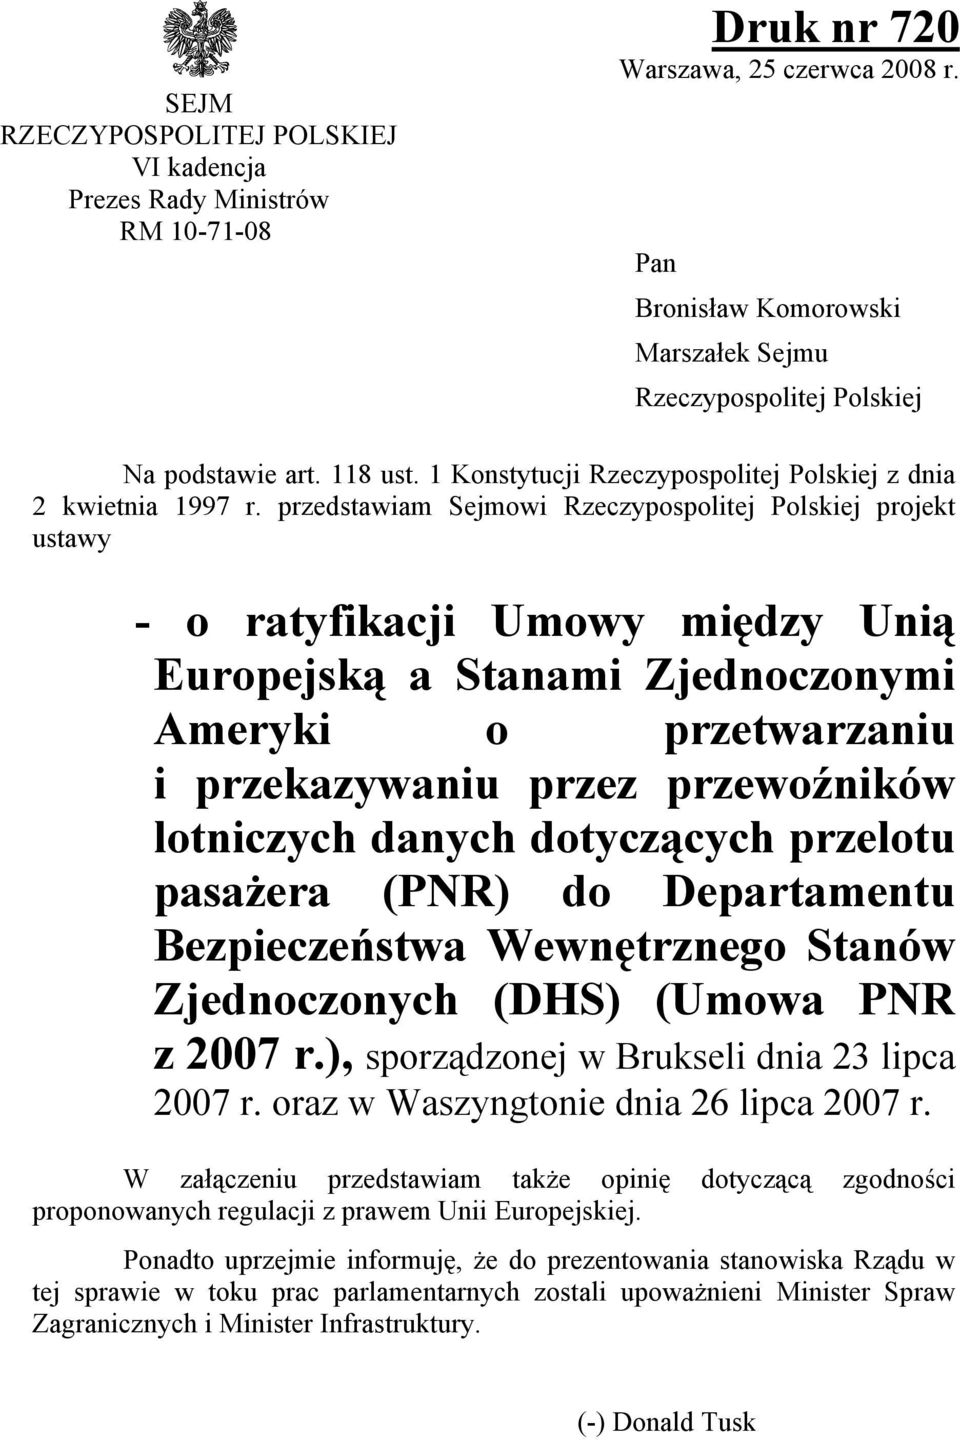 przedstawiam Sejmowi Rzeczypospolitej Polskiej projekt ustawy - o ratyfikacji Umowy między Unią Europejską a Stanami Zjednoczonymi Ameryki o przetwarzaniu i przekazywaniu przez przewoźników